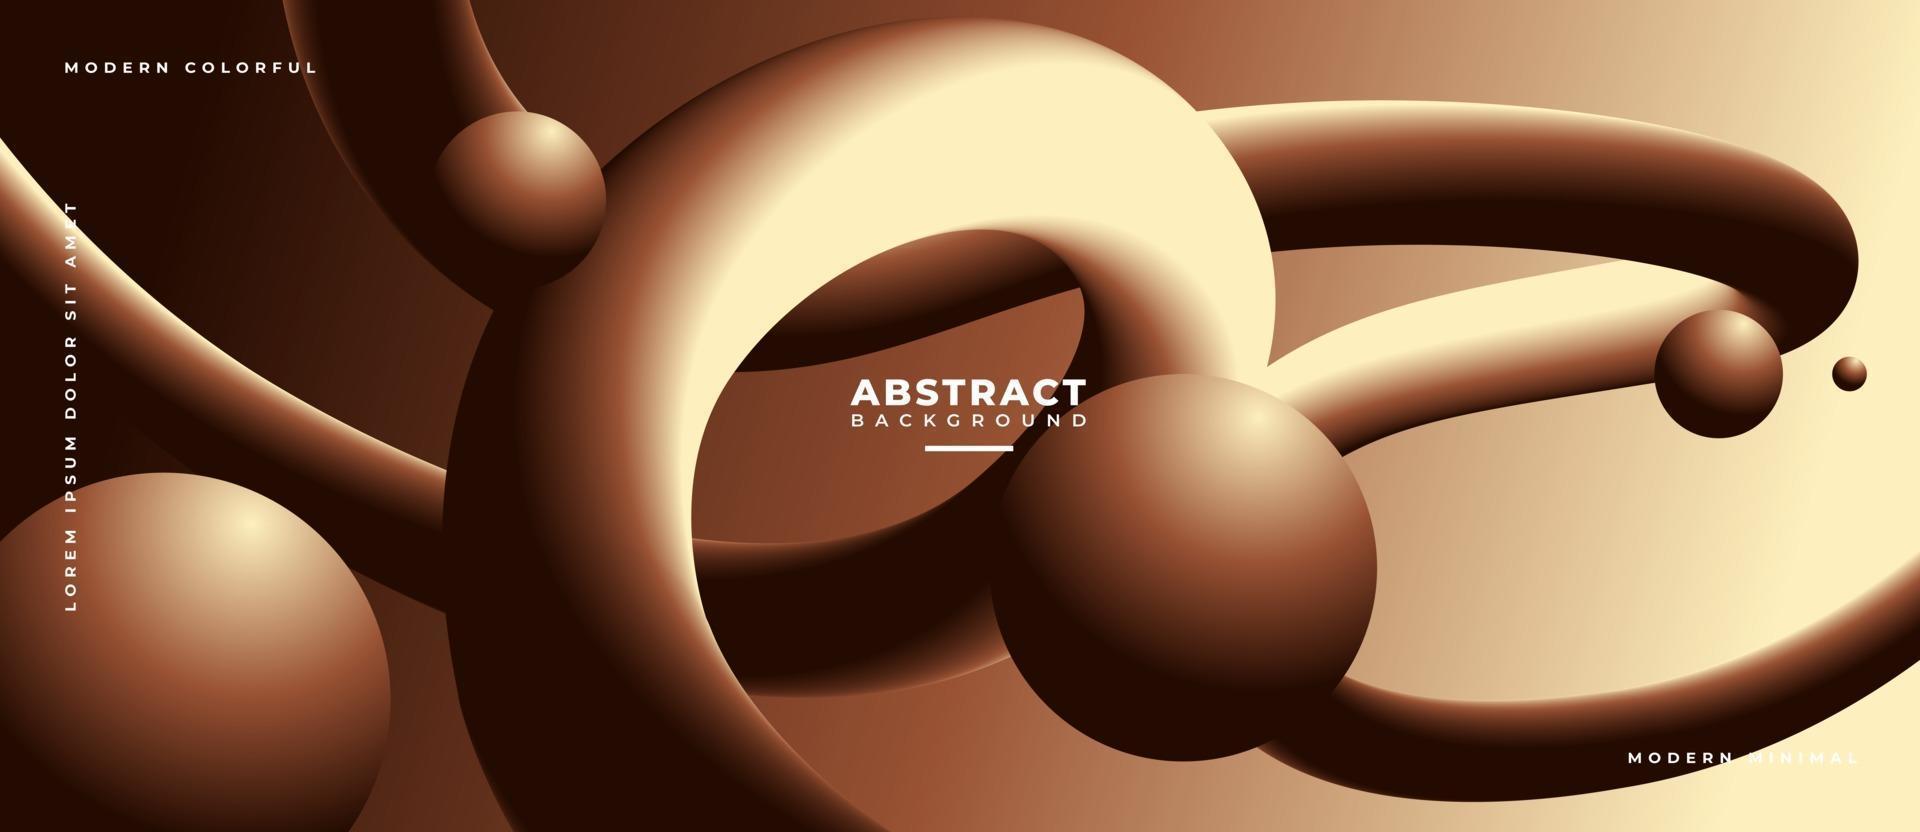 Bakgrund för flytande våg för abstrakt choklad 3d. vektor